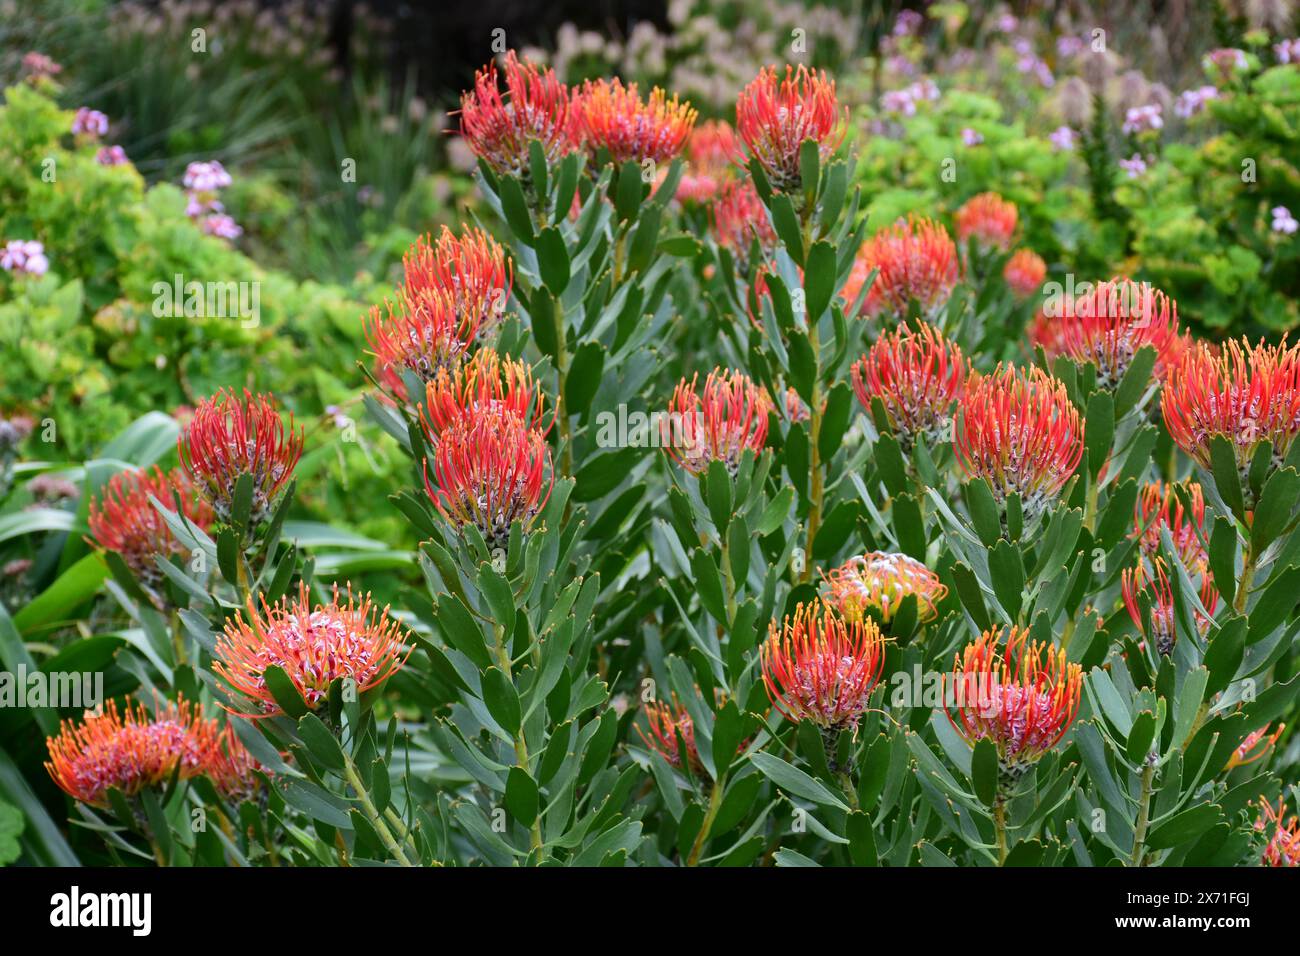 Pincushion Protea, Leucospermum, Kirstenbosch National Botanical Garden, Newlands, near Cape Town, South Africa Stock Photo